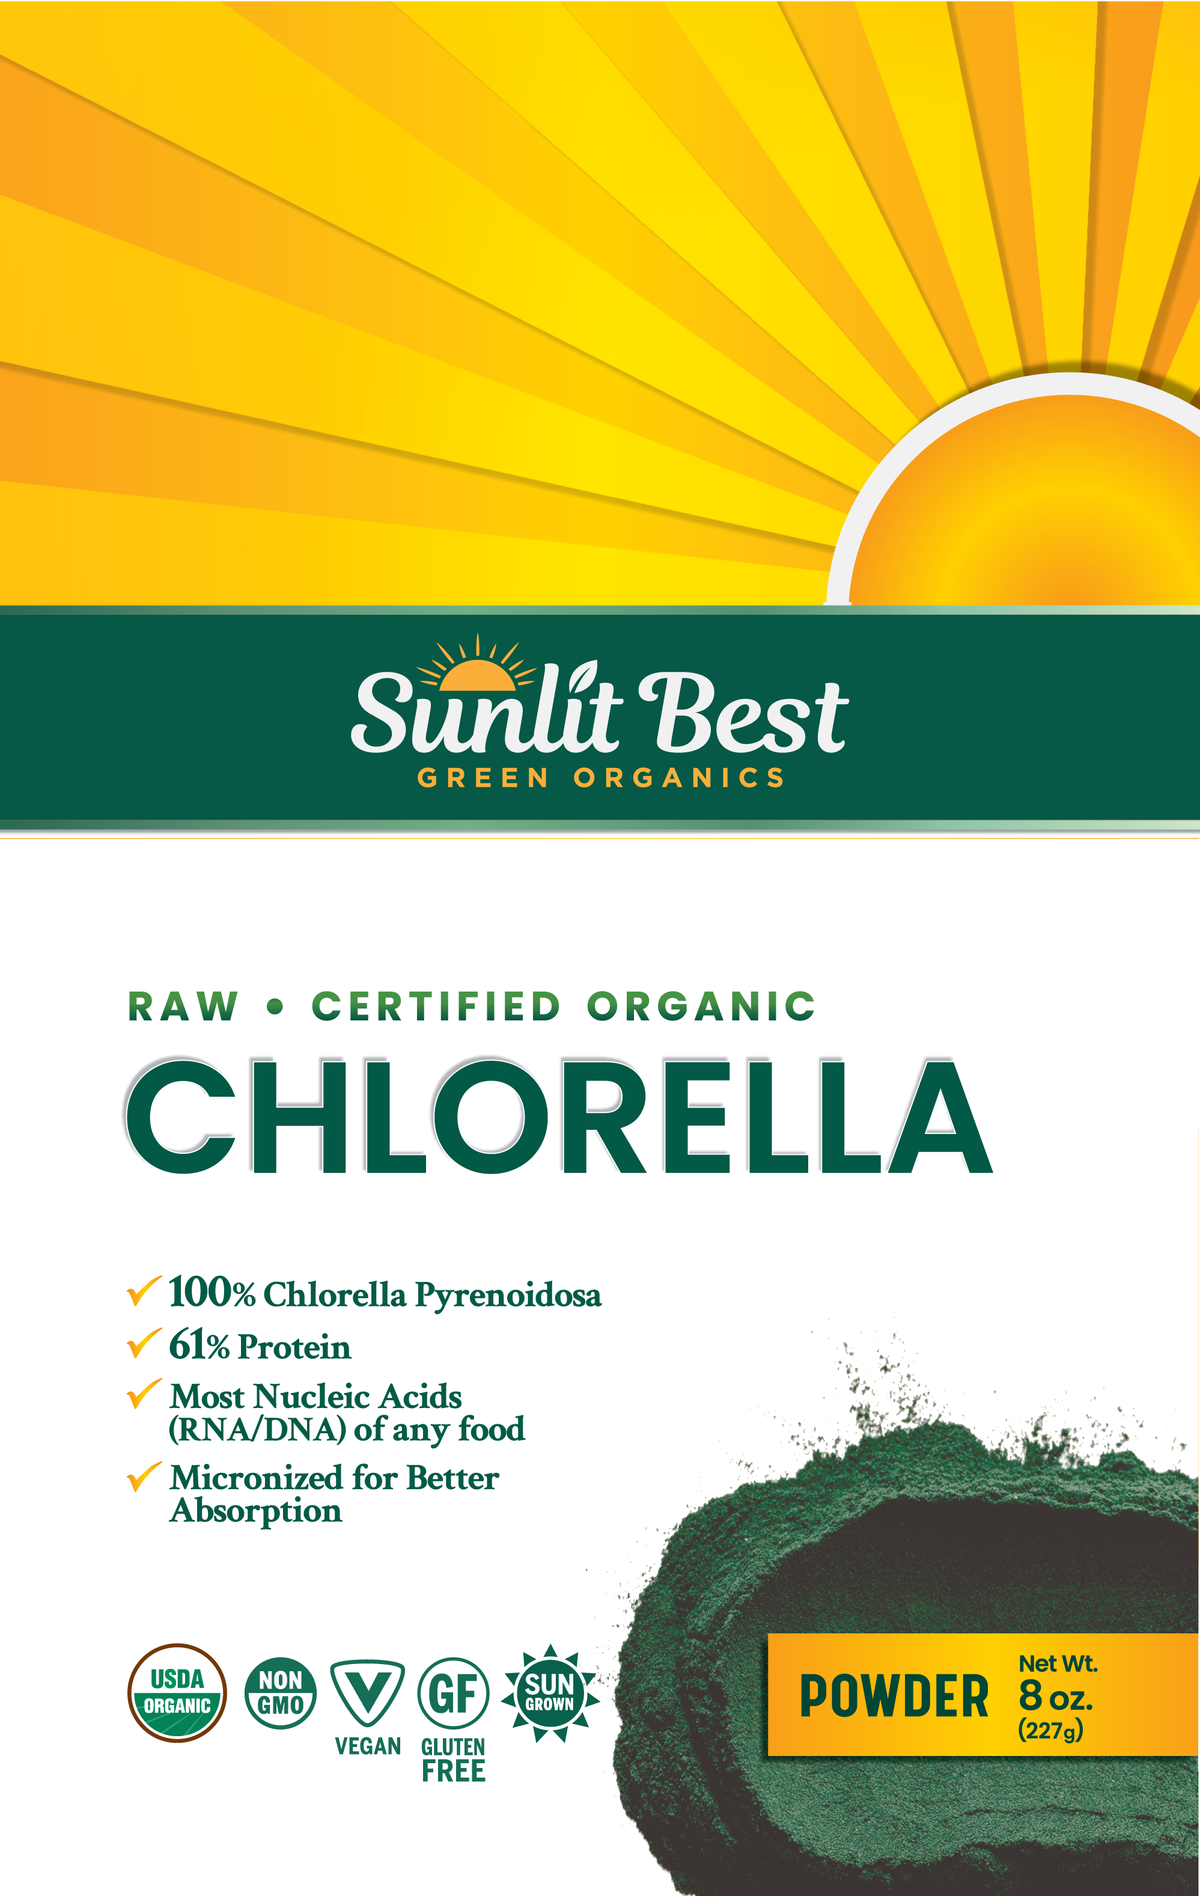 Sunlit Best Green Organic Chlorella 8 Oz Powder